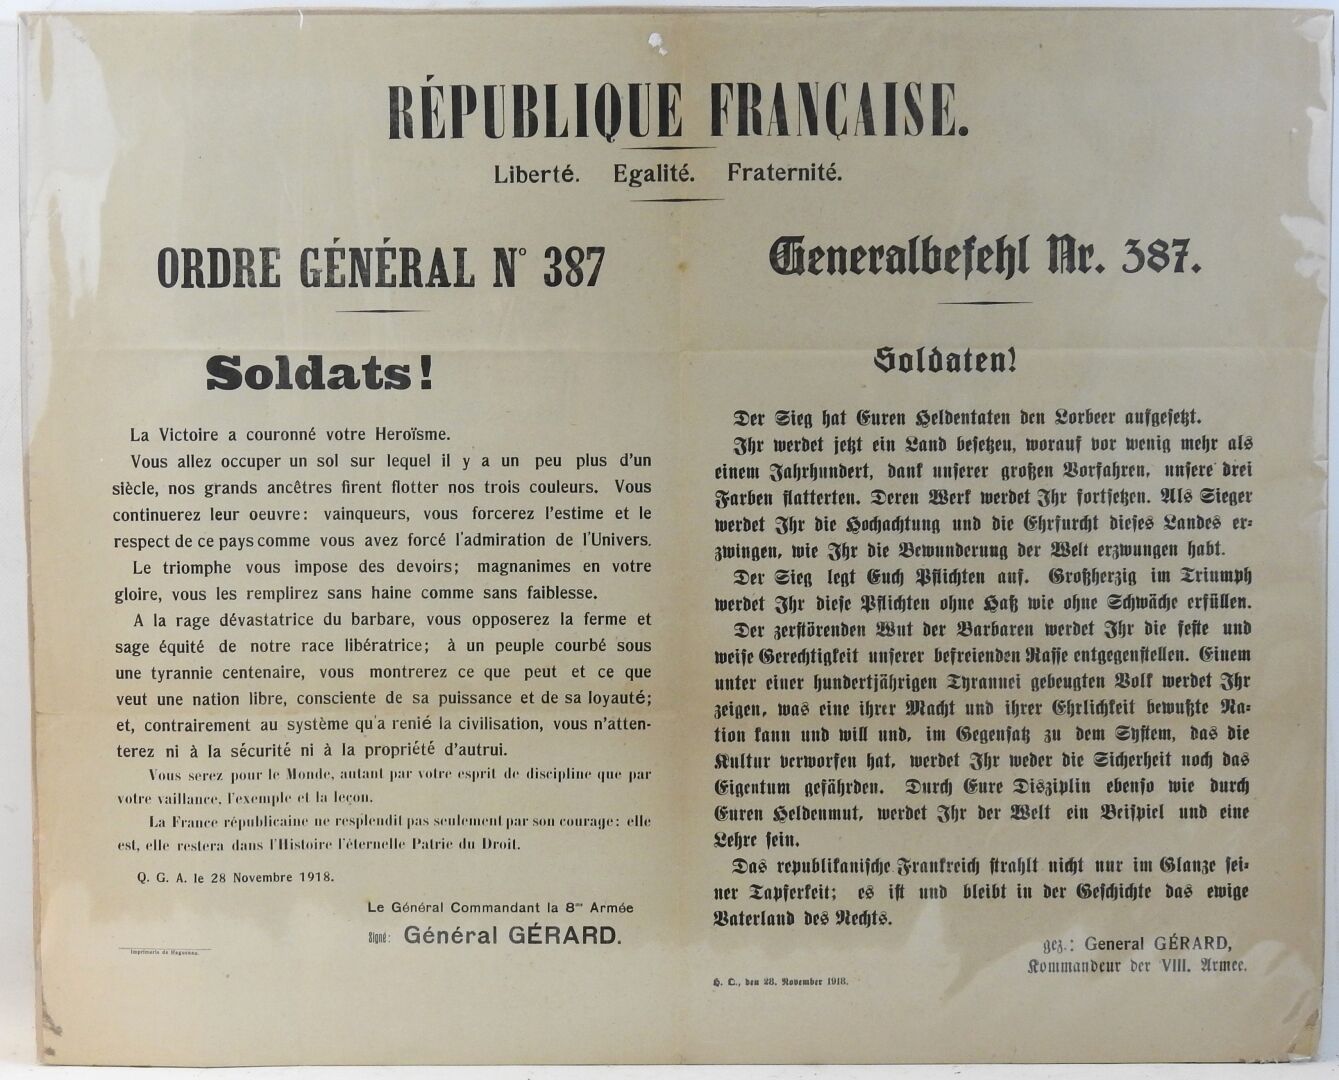 Null POSTER. "Ordine generale n° 387 del generale Gérard comandante dell'8a Arma&hellip;